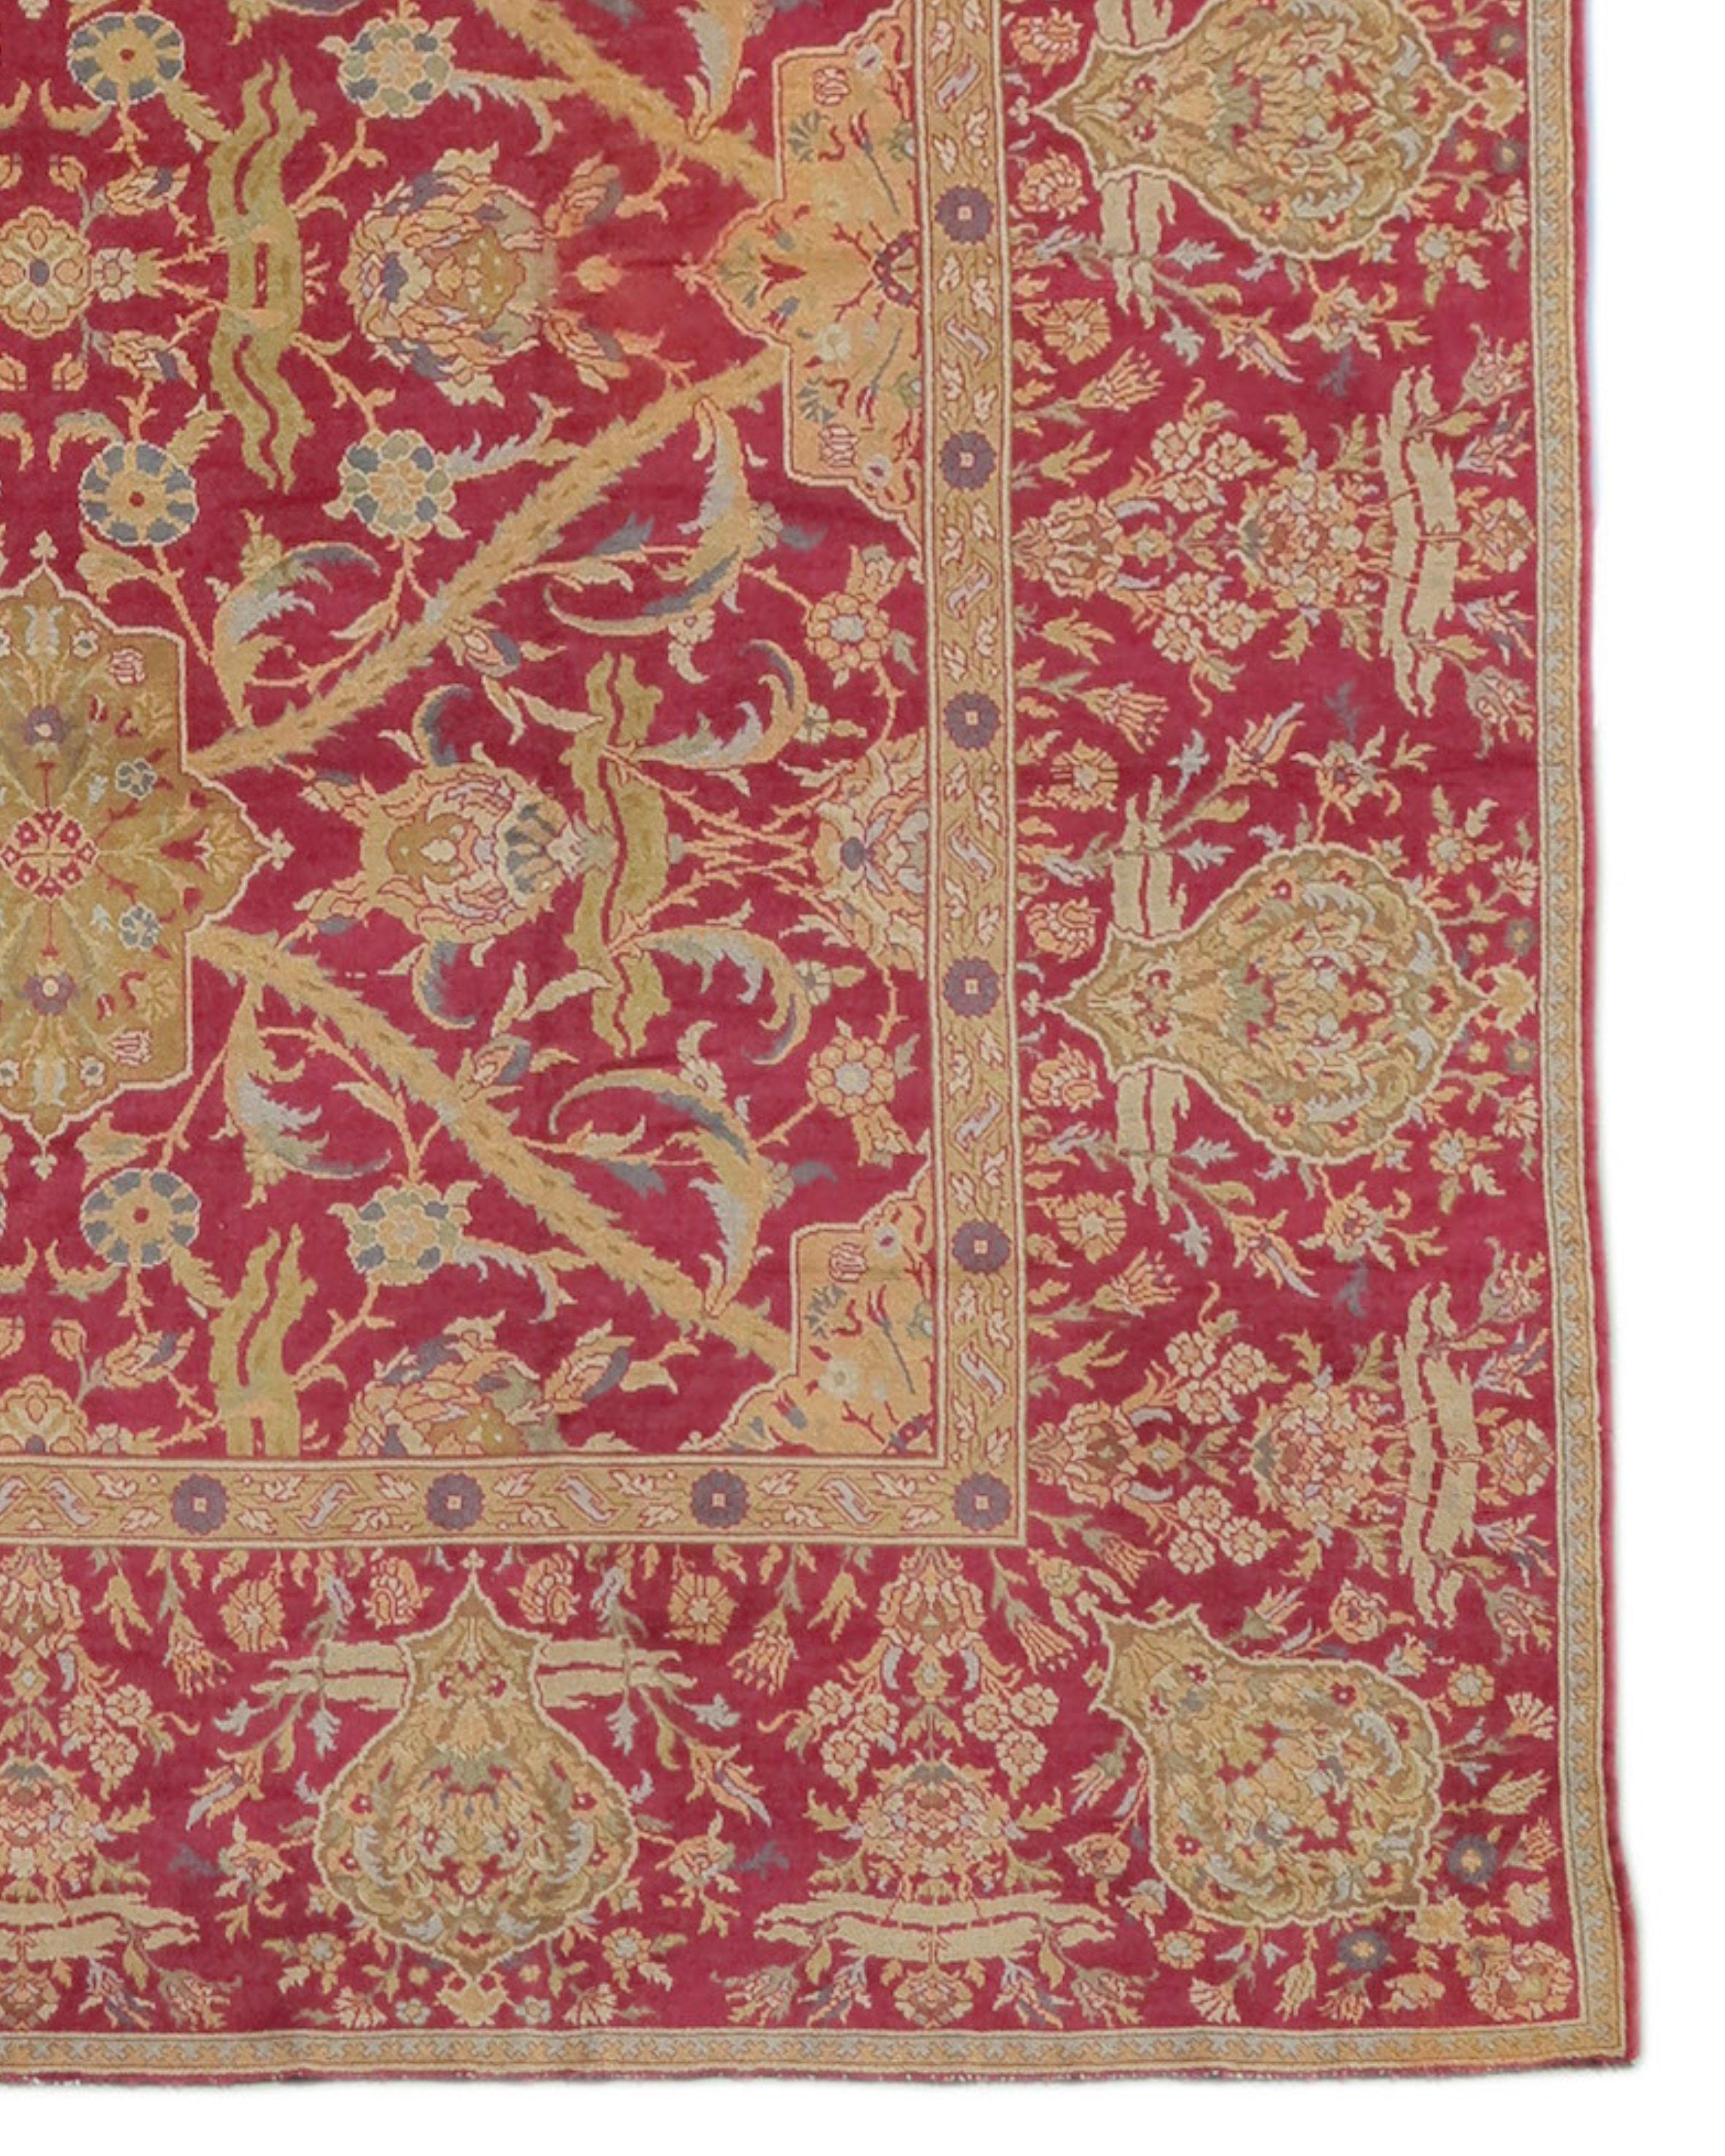 Ancien tapis autrichien de style ottoman, fin du 19e siècle

À la fin du XIXe siècle, les érudits européens ont commencé à s'intéresser de plus en plus aux tapis orientaux classiques du XVe au XVIIe siècle, et c'est à cette époque que plusieurs